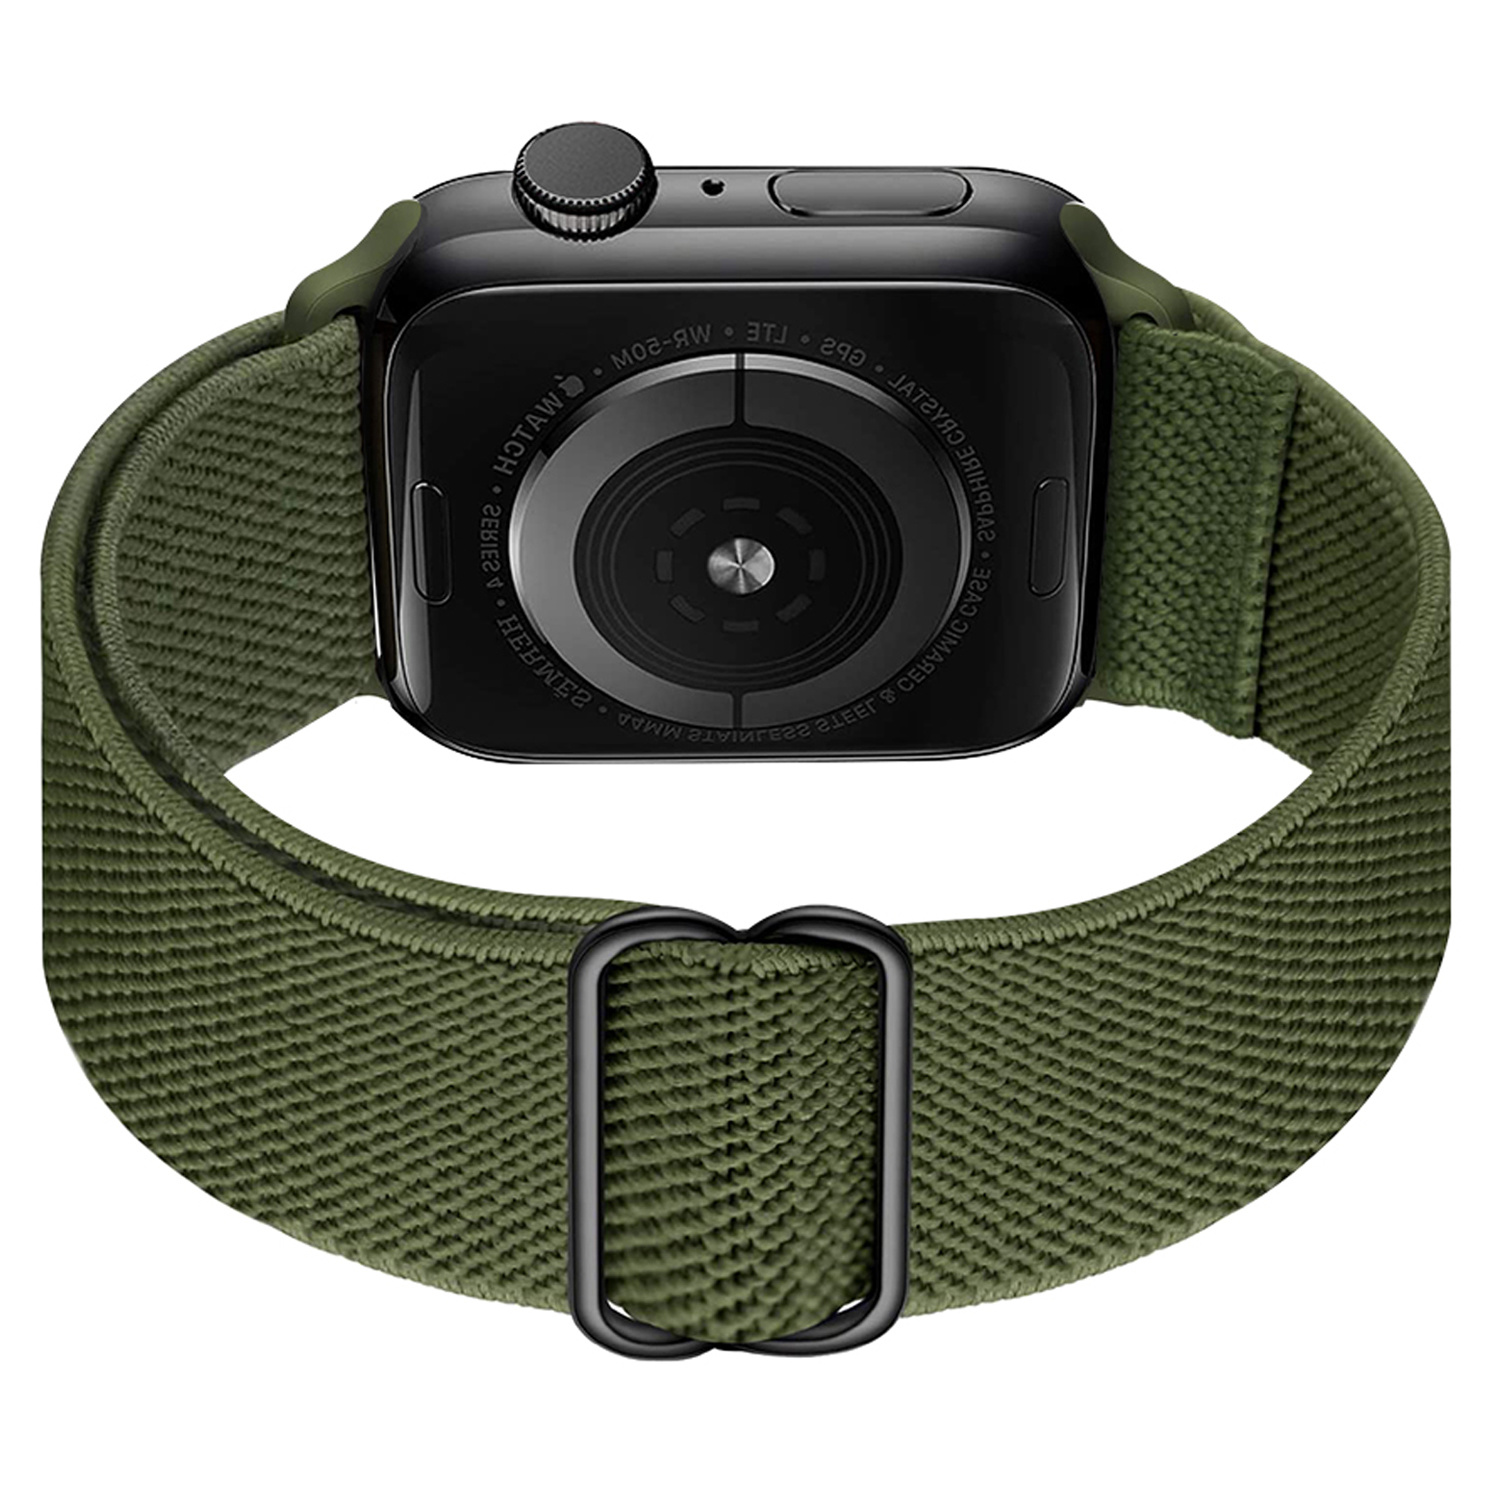 BASEY. Nylon Bandje Geschikt voor Apple Watch 1-8 / SE (38/40/41 mm) Bandje Stof - Horloge Band Verstelbare Gesp Polsband Geschikt voor Apple Watch 1-8 / SE (38/40/41 mm) - Donkergroen